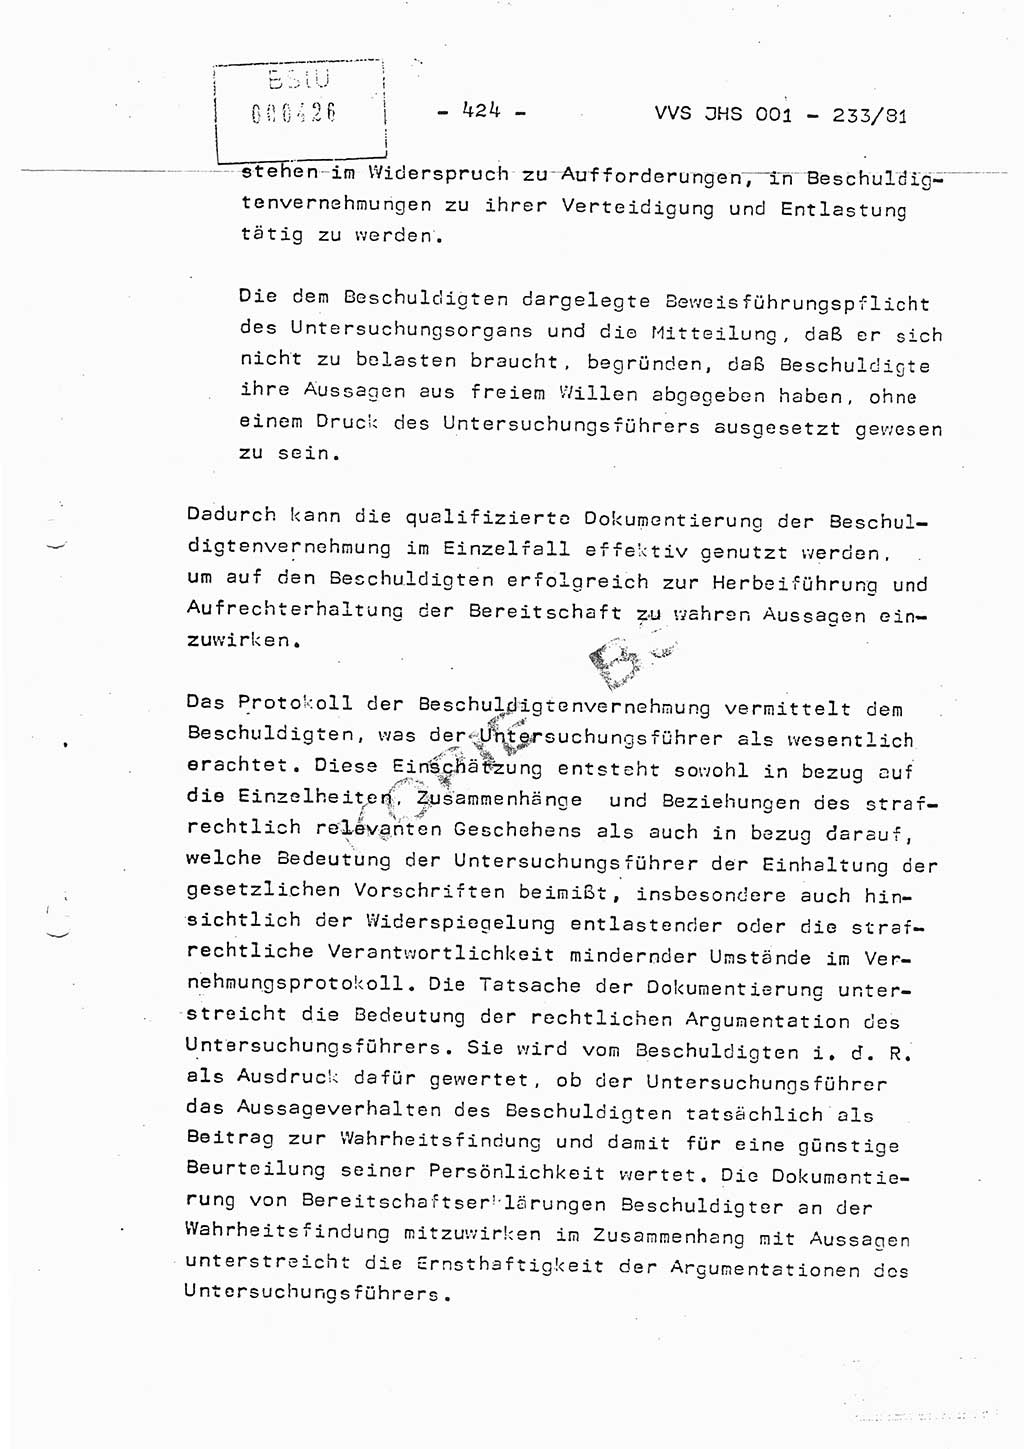 Dissertation Oberstleutnant Horst Zank (JHS), Oberstleutnant Dr. Karl-Heinz Knoblauch (JHS), Oberstleutnant Gustav-Adolf Kowalewski (HA Ⅸ), Oberstleutnant Wolfgang Plötner (HA Ⅸ), Ministerium für Staatssicherheit (MfS) [Deutsche Demokratische Republik (DDR)], Juristische Hochschule (JHS), Vertrauliche Verschlußsache (VVS) o001-233/81, Potsdam 1981, Blatt 424 (Diss. MfS DDR JHS VVS o001-233/81 1981, Bl. 424)